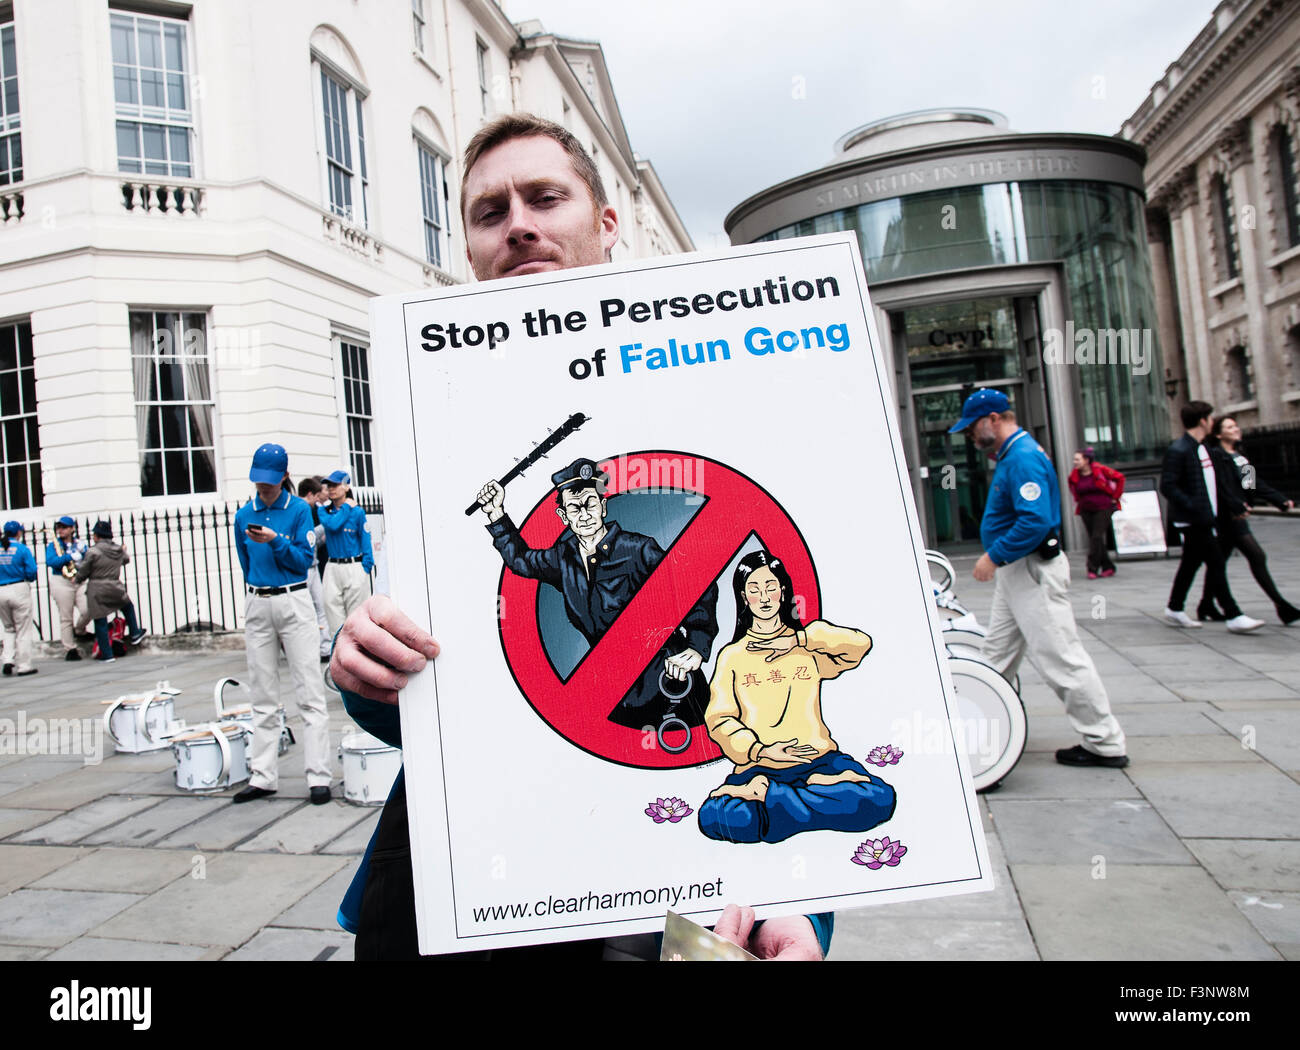 Londra, Regno Unito. 10 ottobre, 2015. Un uomo con un cartellone di chiedere la fine della persecuzione del Falun Gong a una protesta nel centro di Londra (UK), 10 ottobre 2015. Credito: Noemi Gago/Alamy Live News Foto Stock